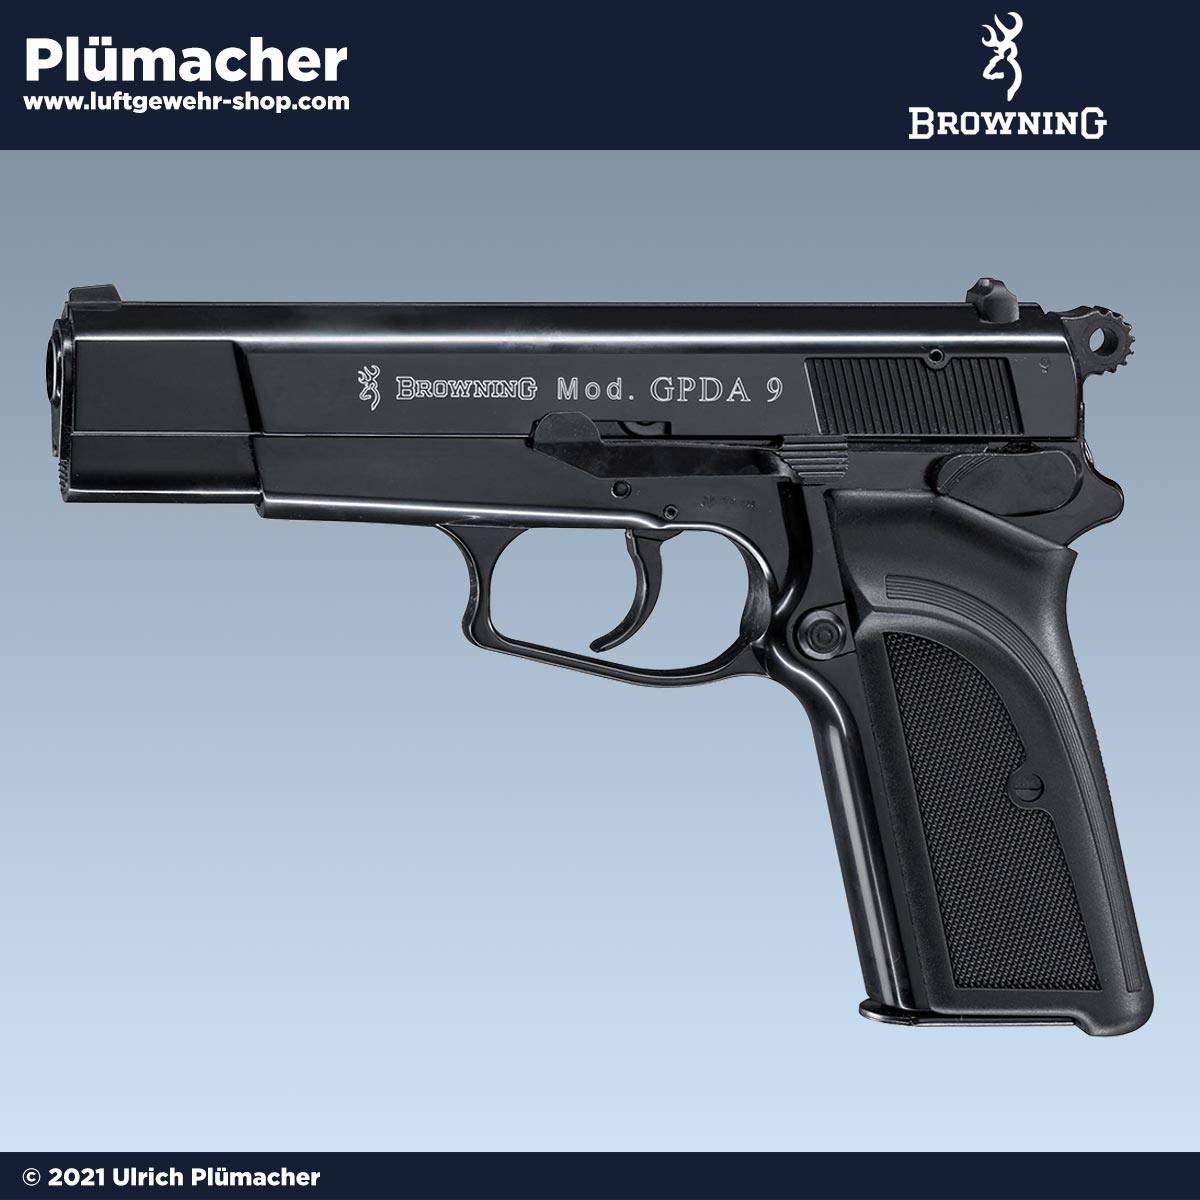 Browning GPDA 9 schwarz Schreckschusswaffe - Gaspistole im Kaliber 9 mm PAK  mit einem 9 Schuss Magazin. Luftgewehr-Shop - Luftgewehre,  Schreckschusswaffen, CO2 Waffen, Luftpistolen kaufen